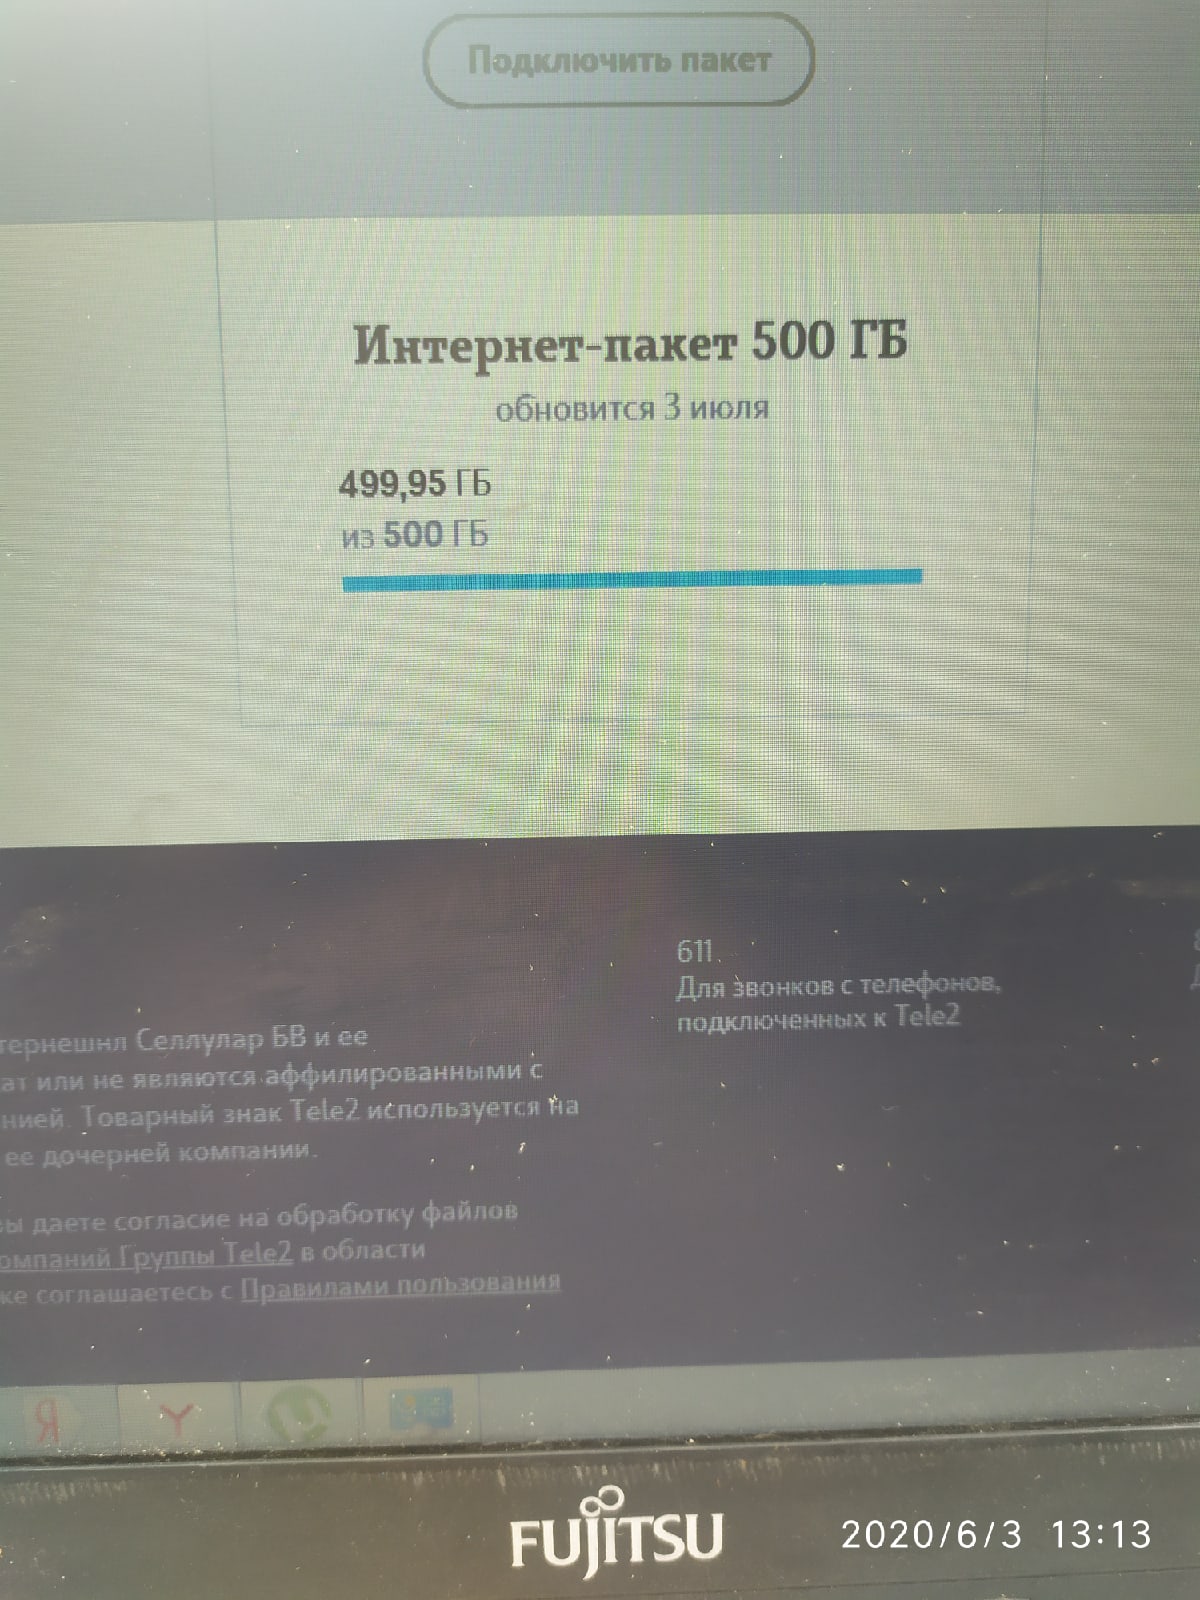 Провели высокоскоростной интернет в деревне Кисельное, Тульской области, Чернского района!